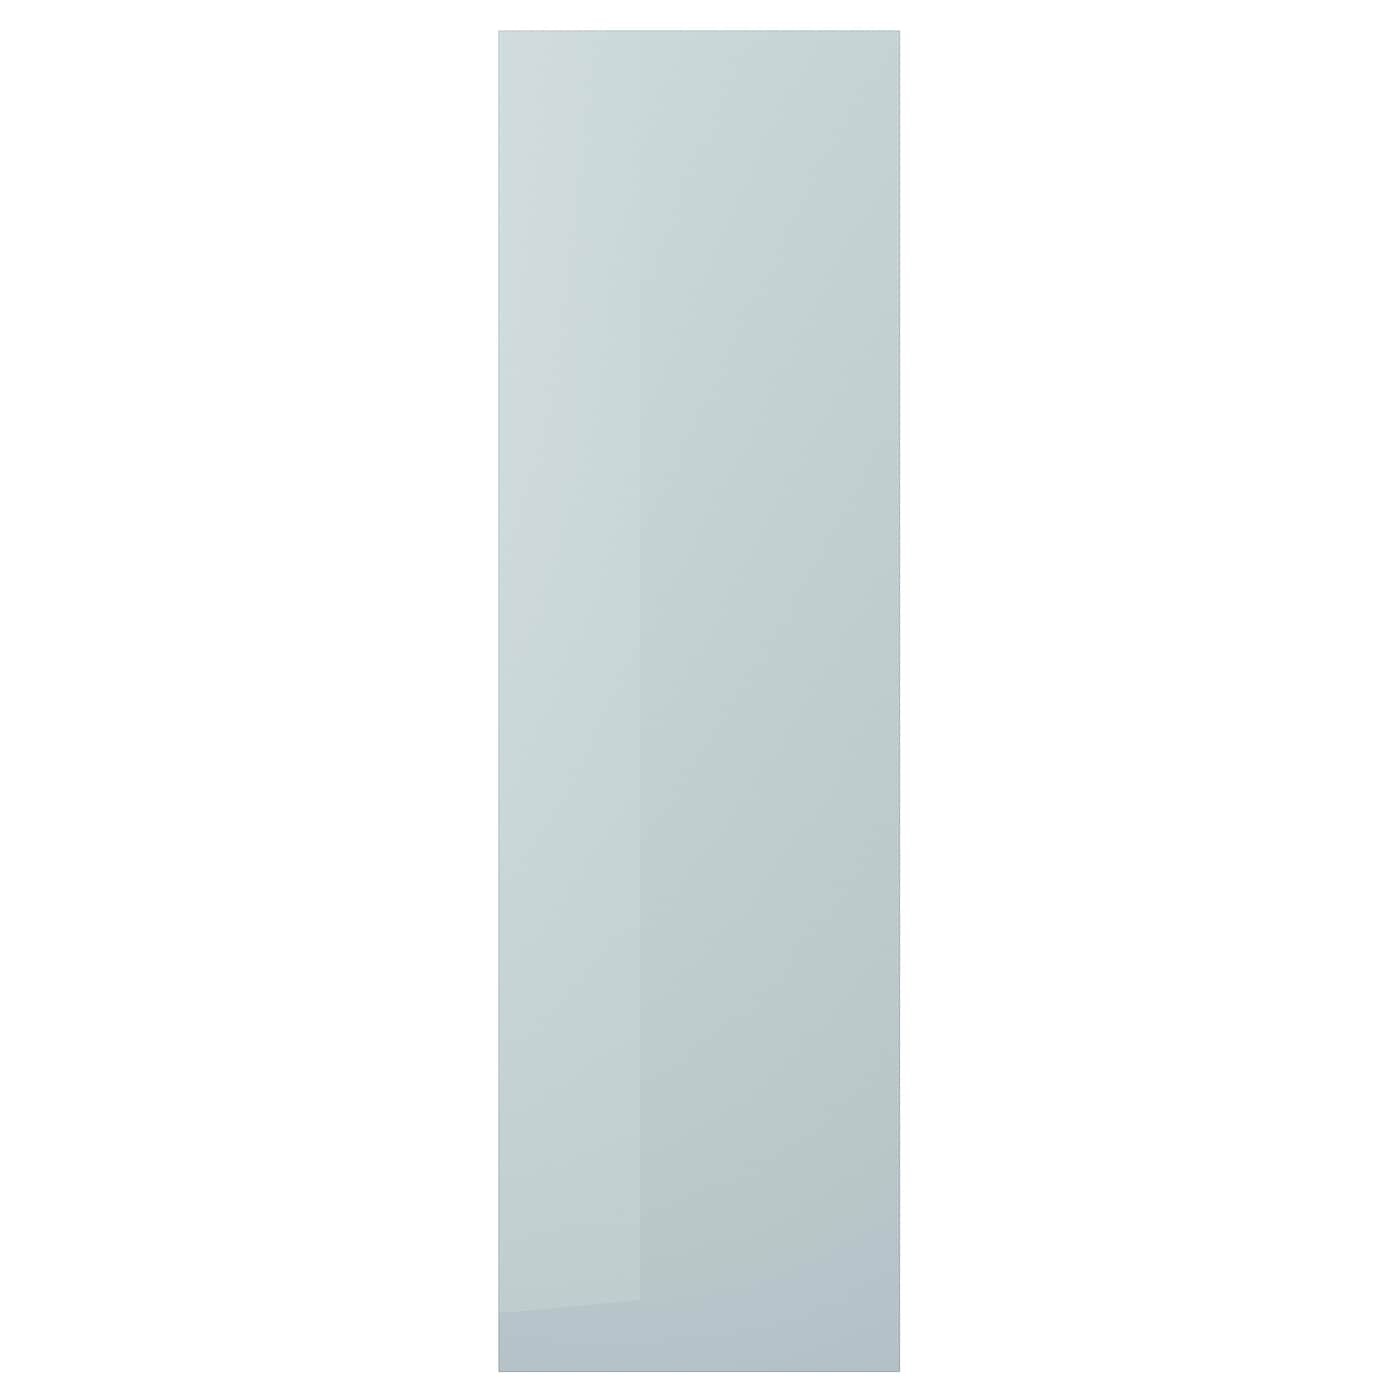 IKEA KALLARP КАЛЛАРП Дверь, глянцевый светло-серо-голубой, 60x200 см 20520151 205.201.51